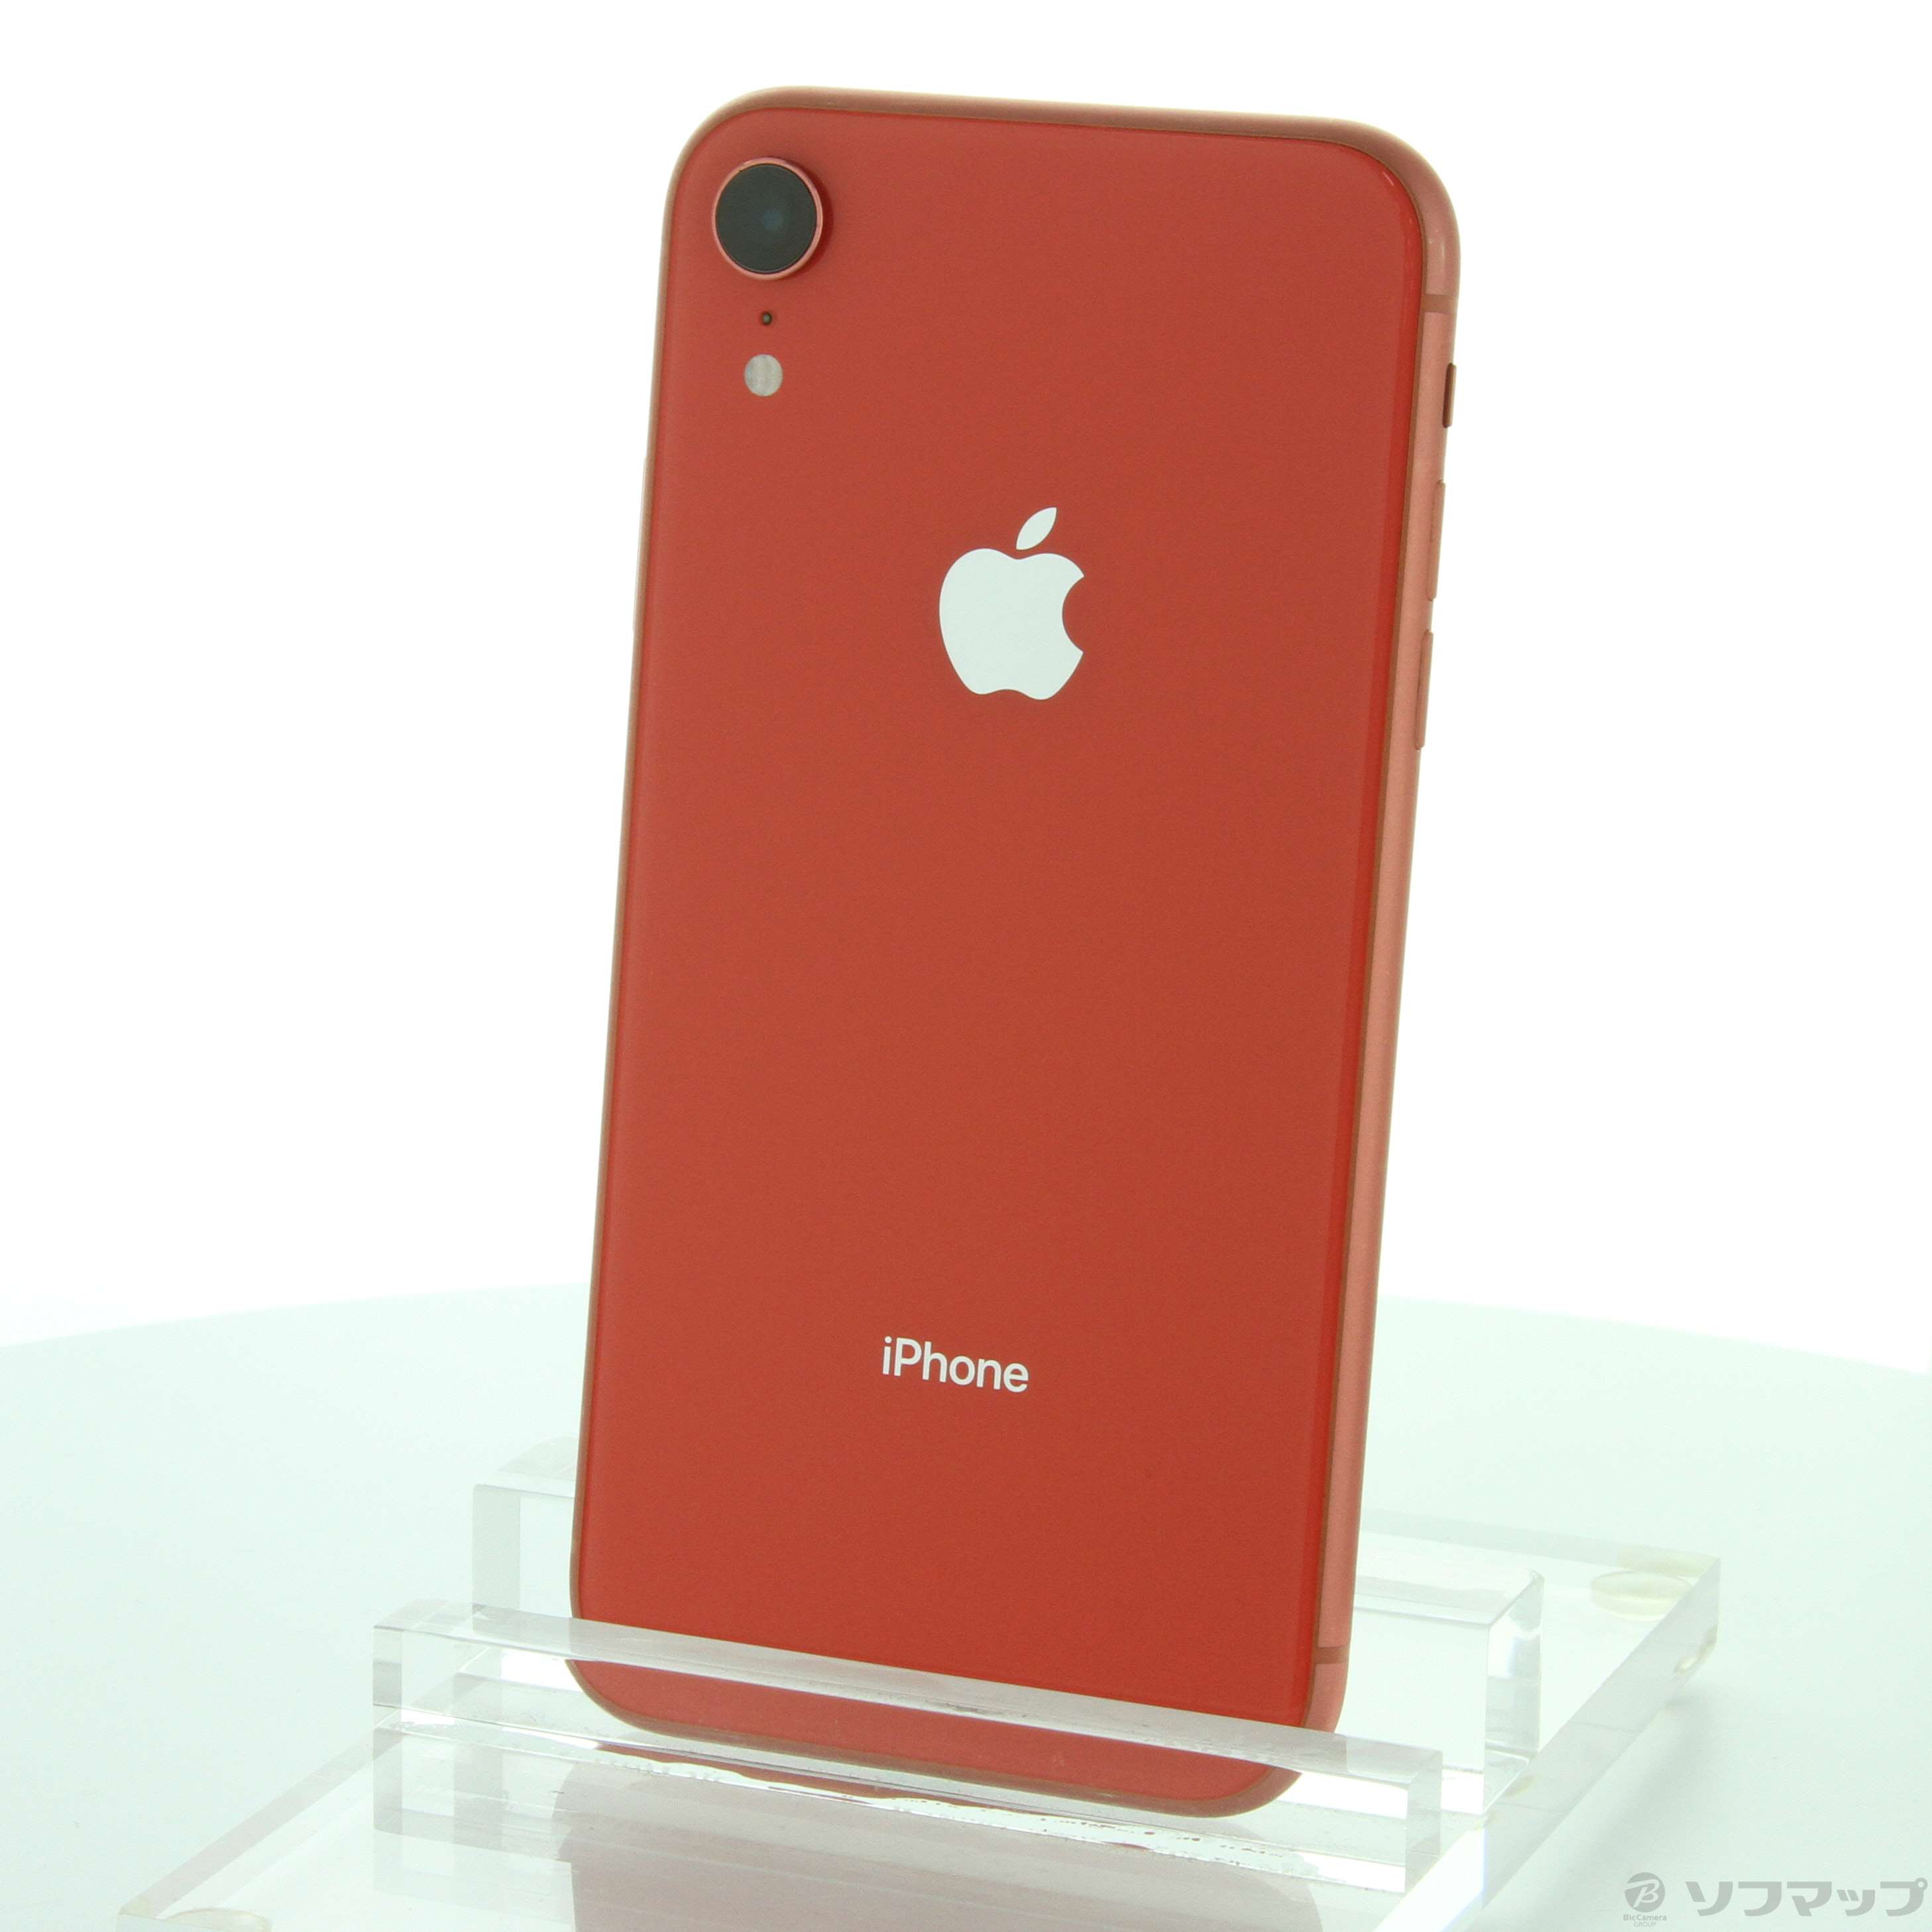 6,930円iPhone XR Coral 128GB ジャンク品